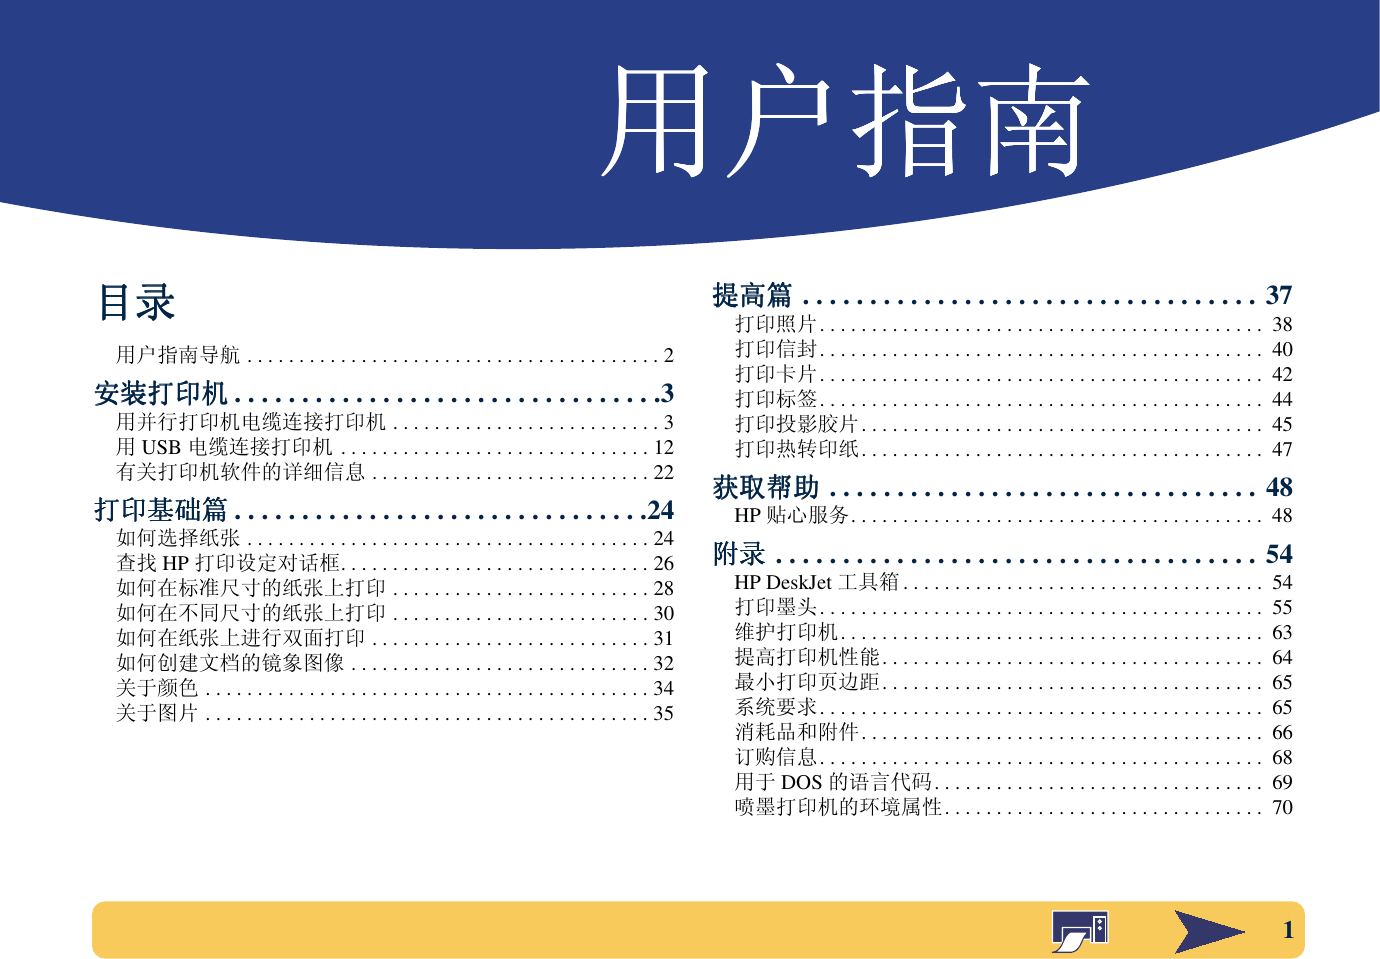 Hp Deskjet Series 640c 系列打印机用户指南 中文版 Bpd